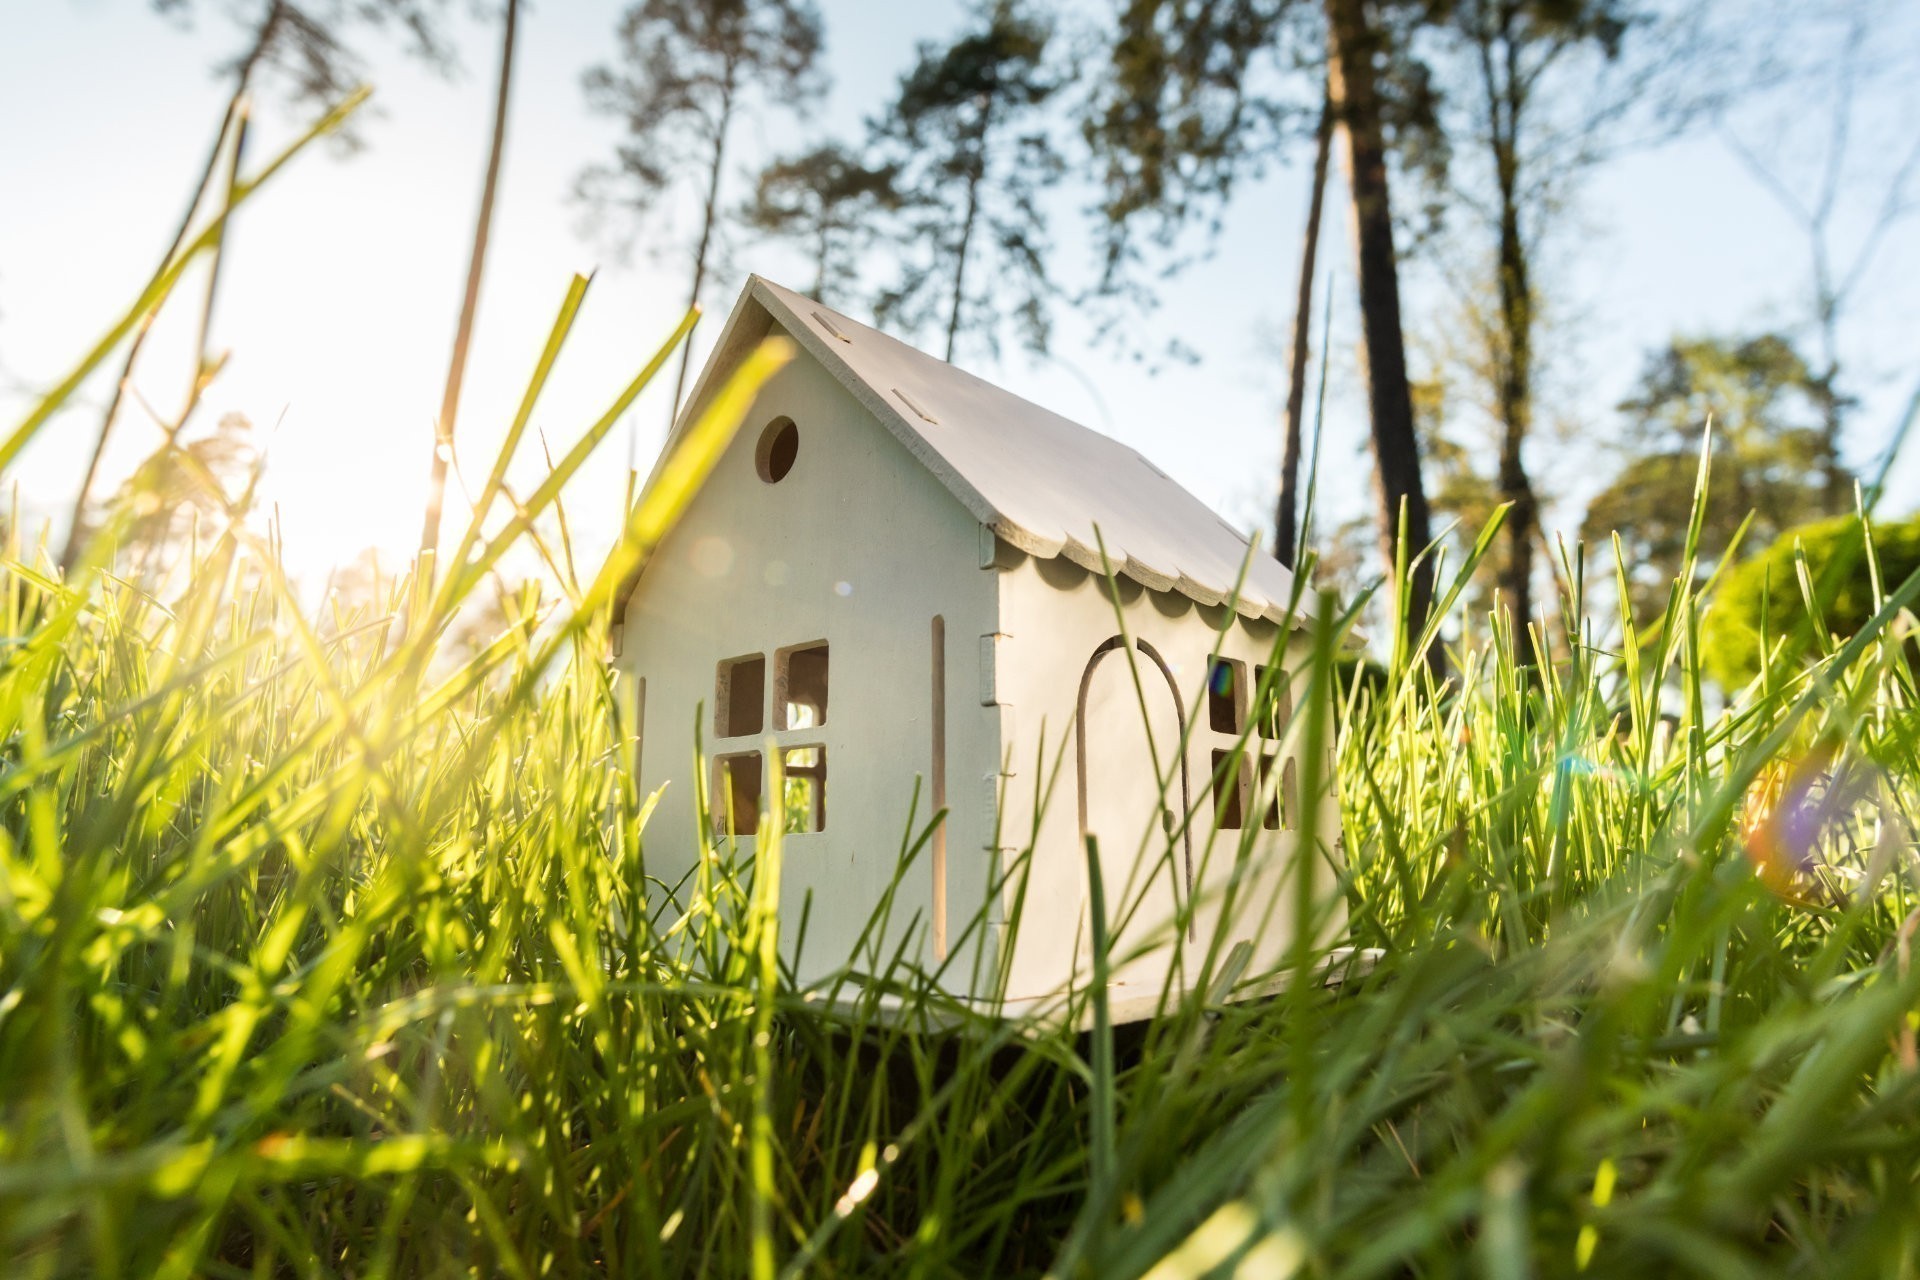 Immobilie kaufen Bremen: Holzmodell eines Hauses auf einer grünen Wiese